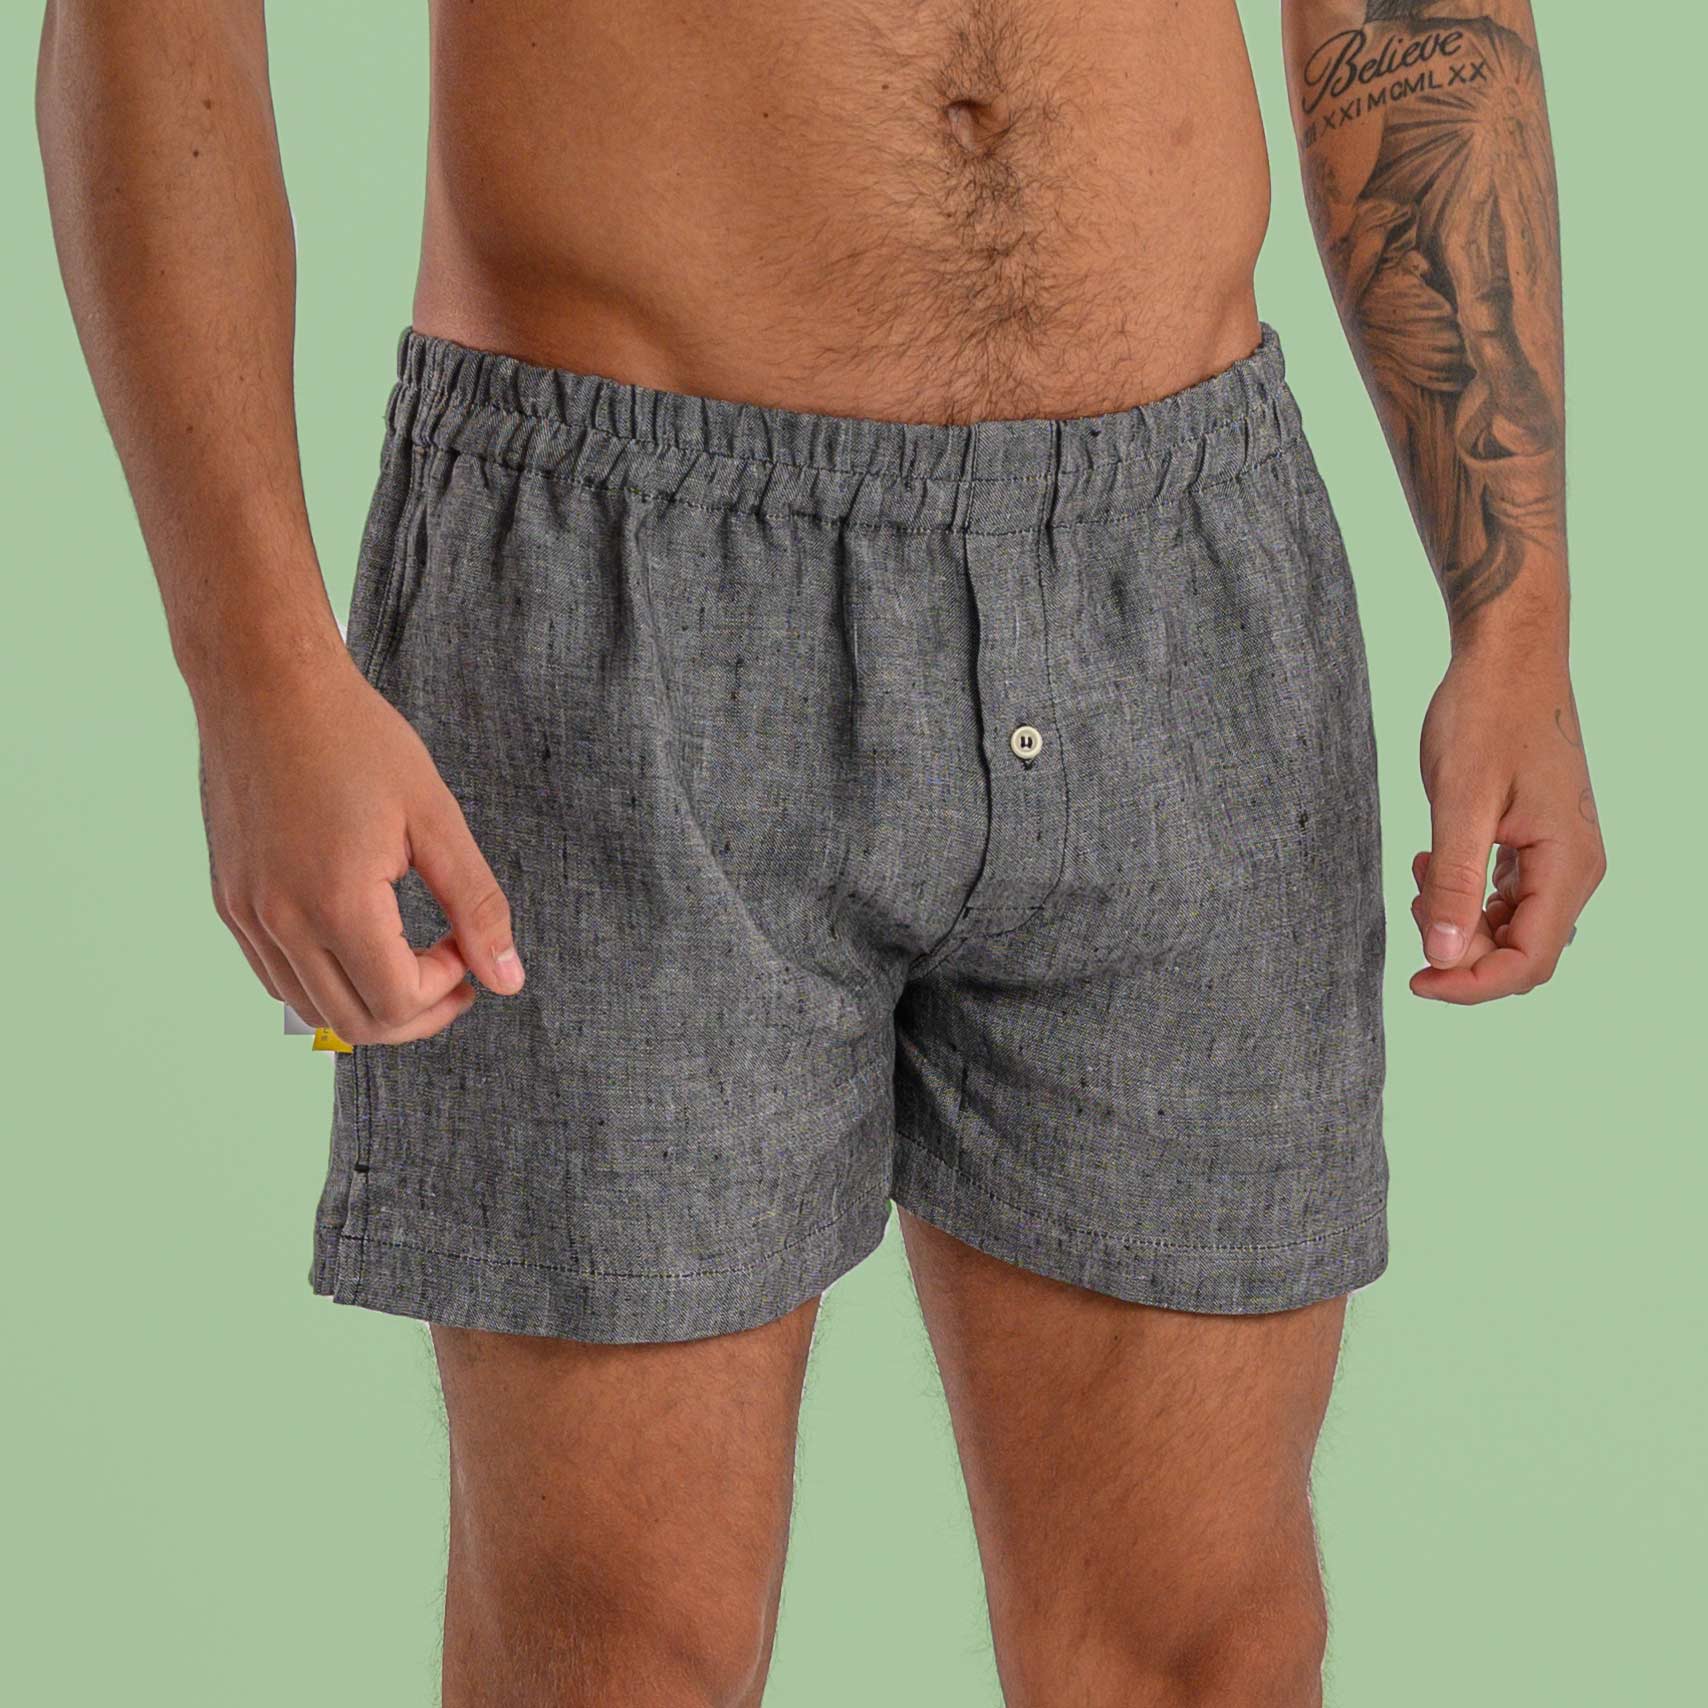 Men's hemp underwear - Bohempia®